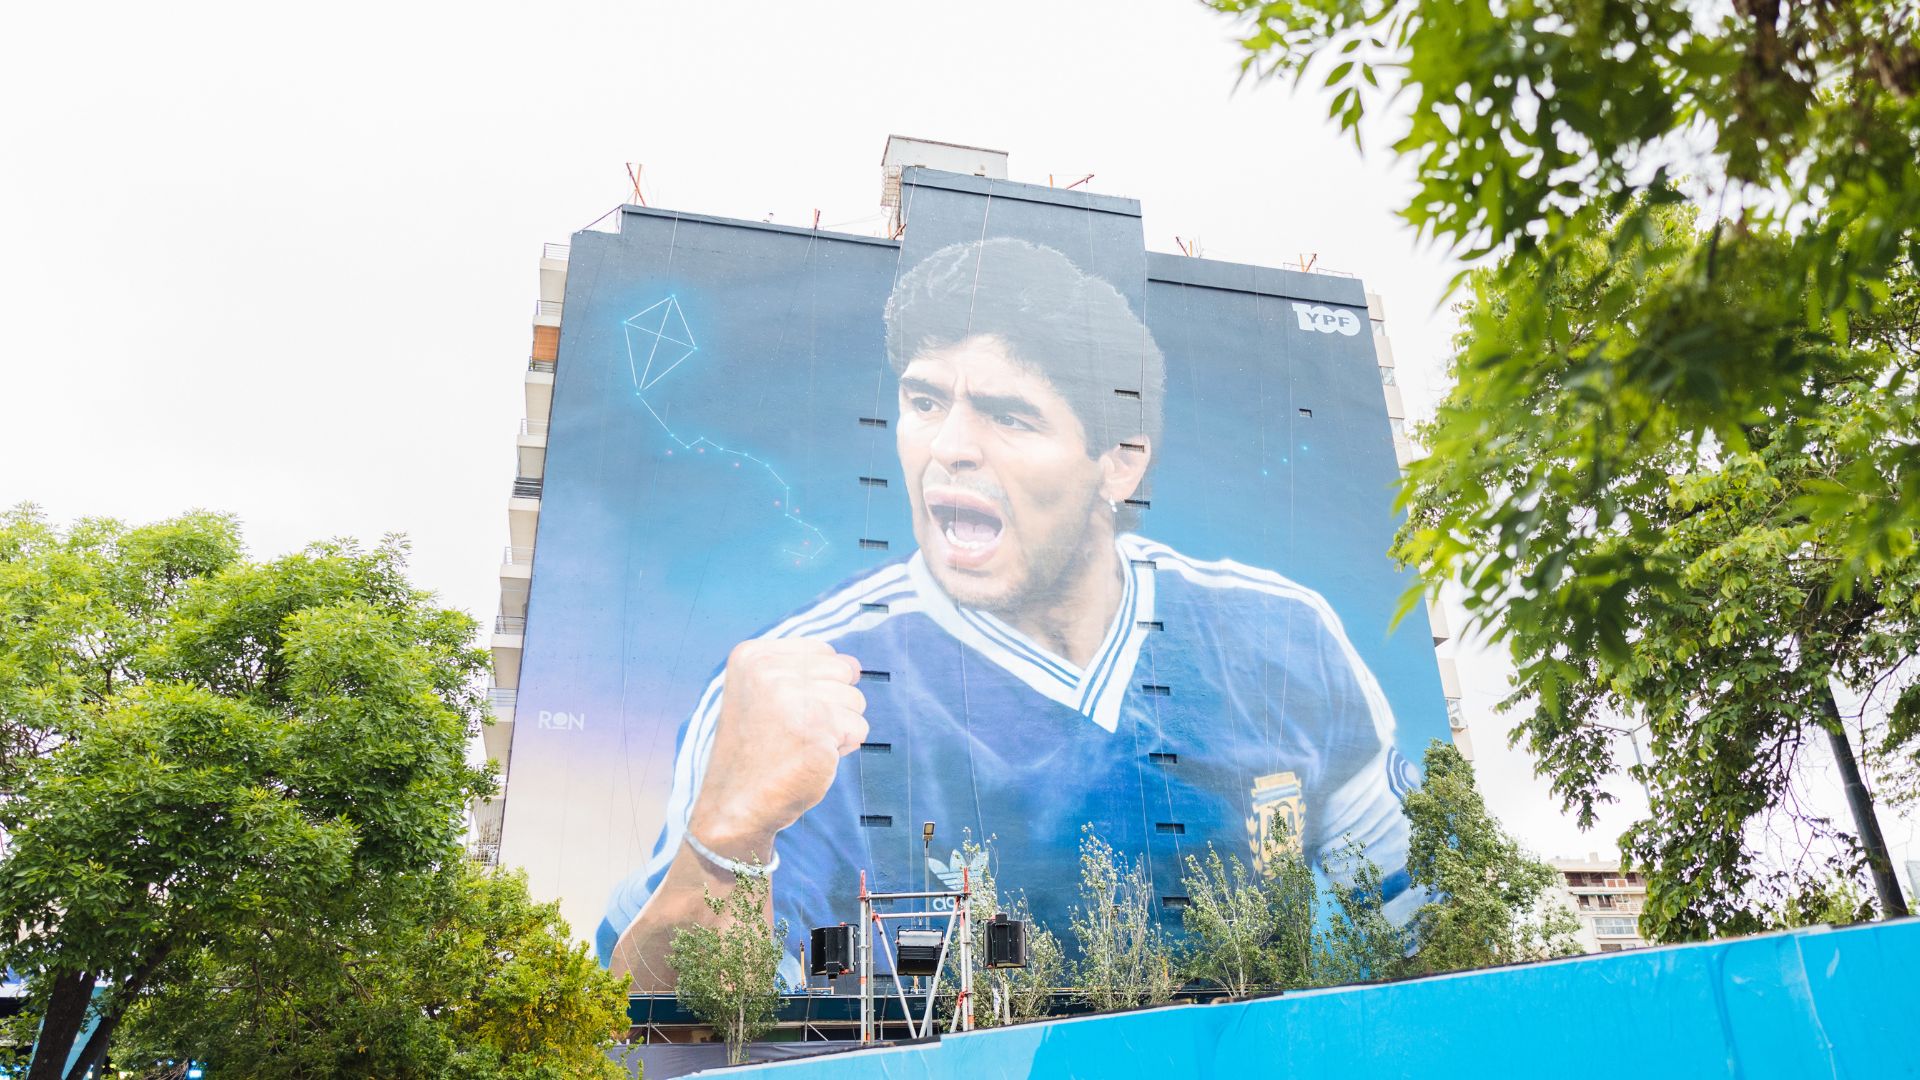 El mural de Diego Maradona realizado por Martín Ron tiene 40 metros de ancho por 45 de alto y es el más grande del mundo hasta el momento (Créditos: Prensa YPF)